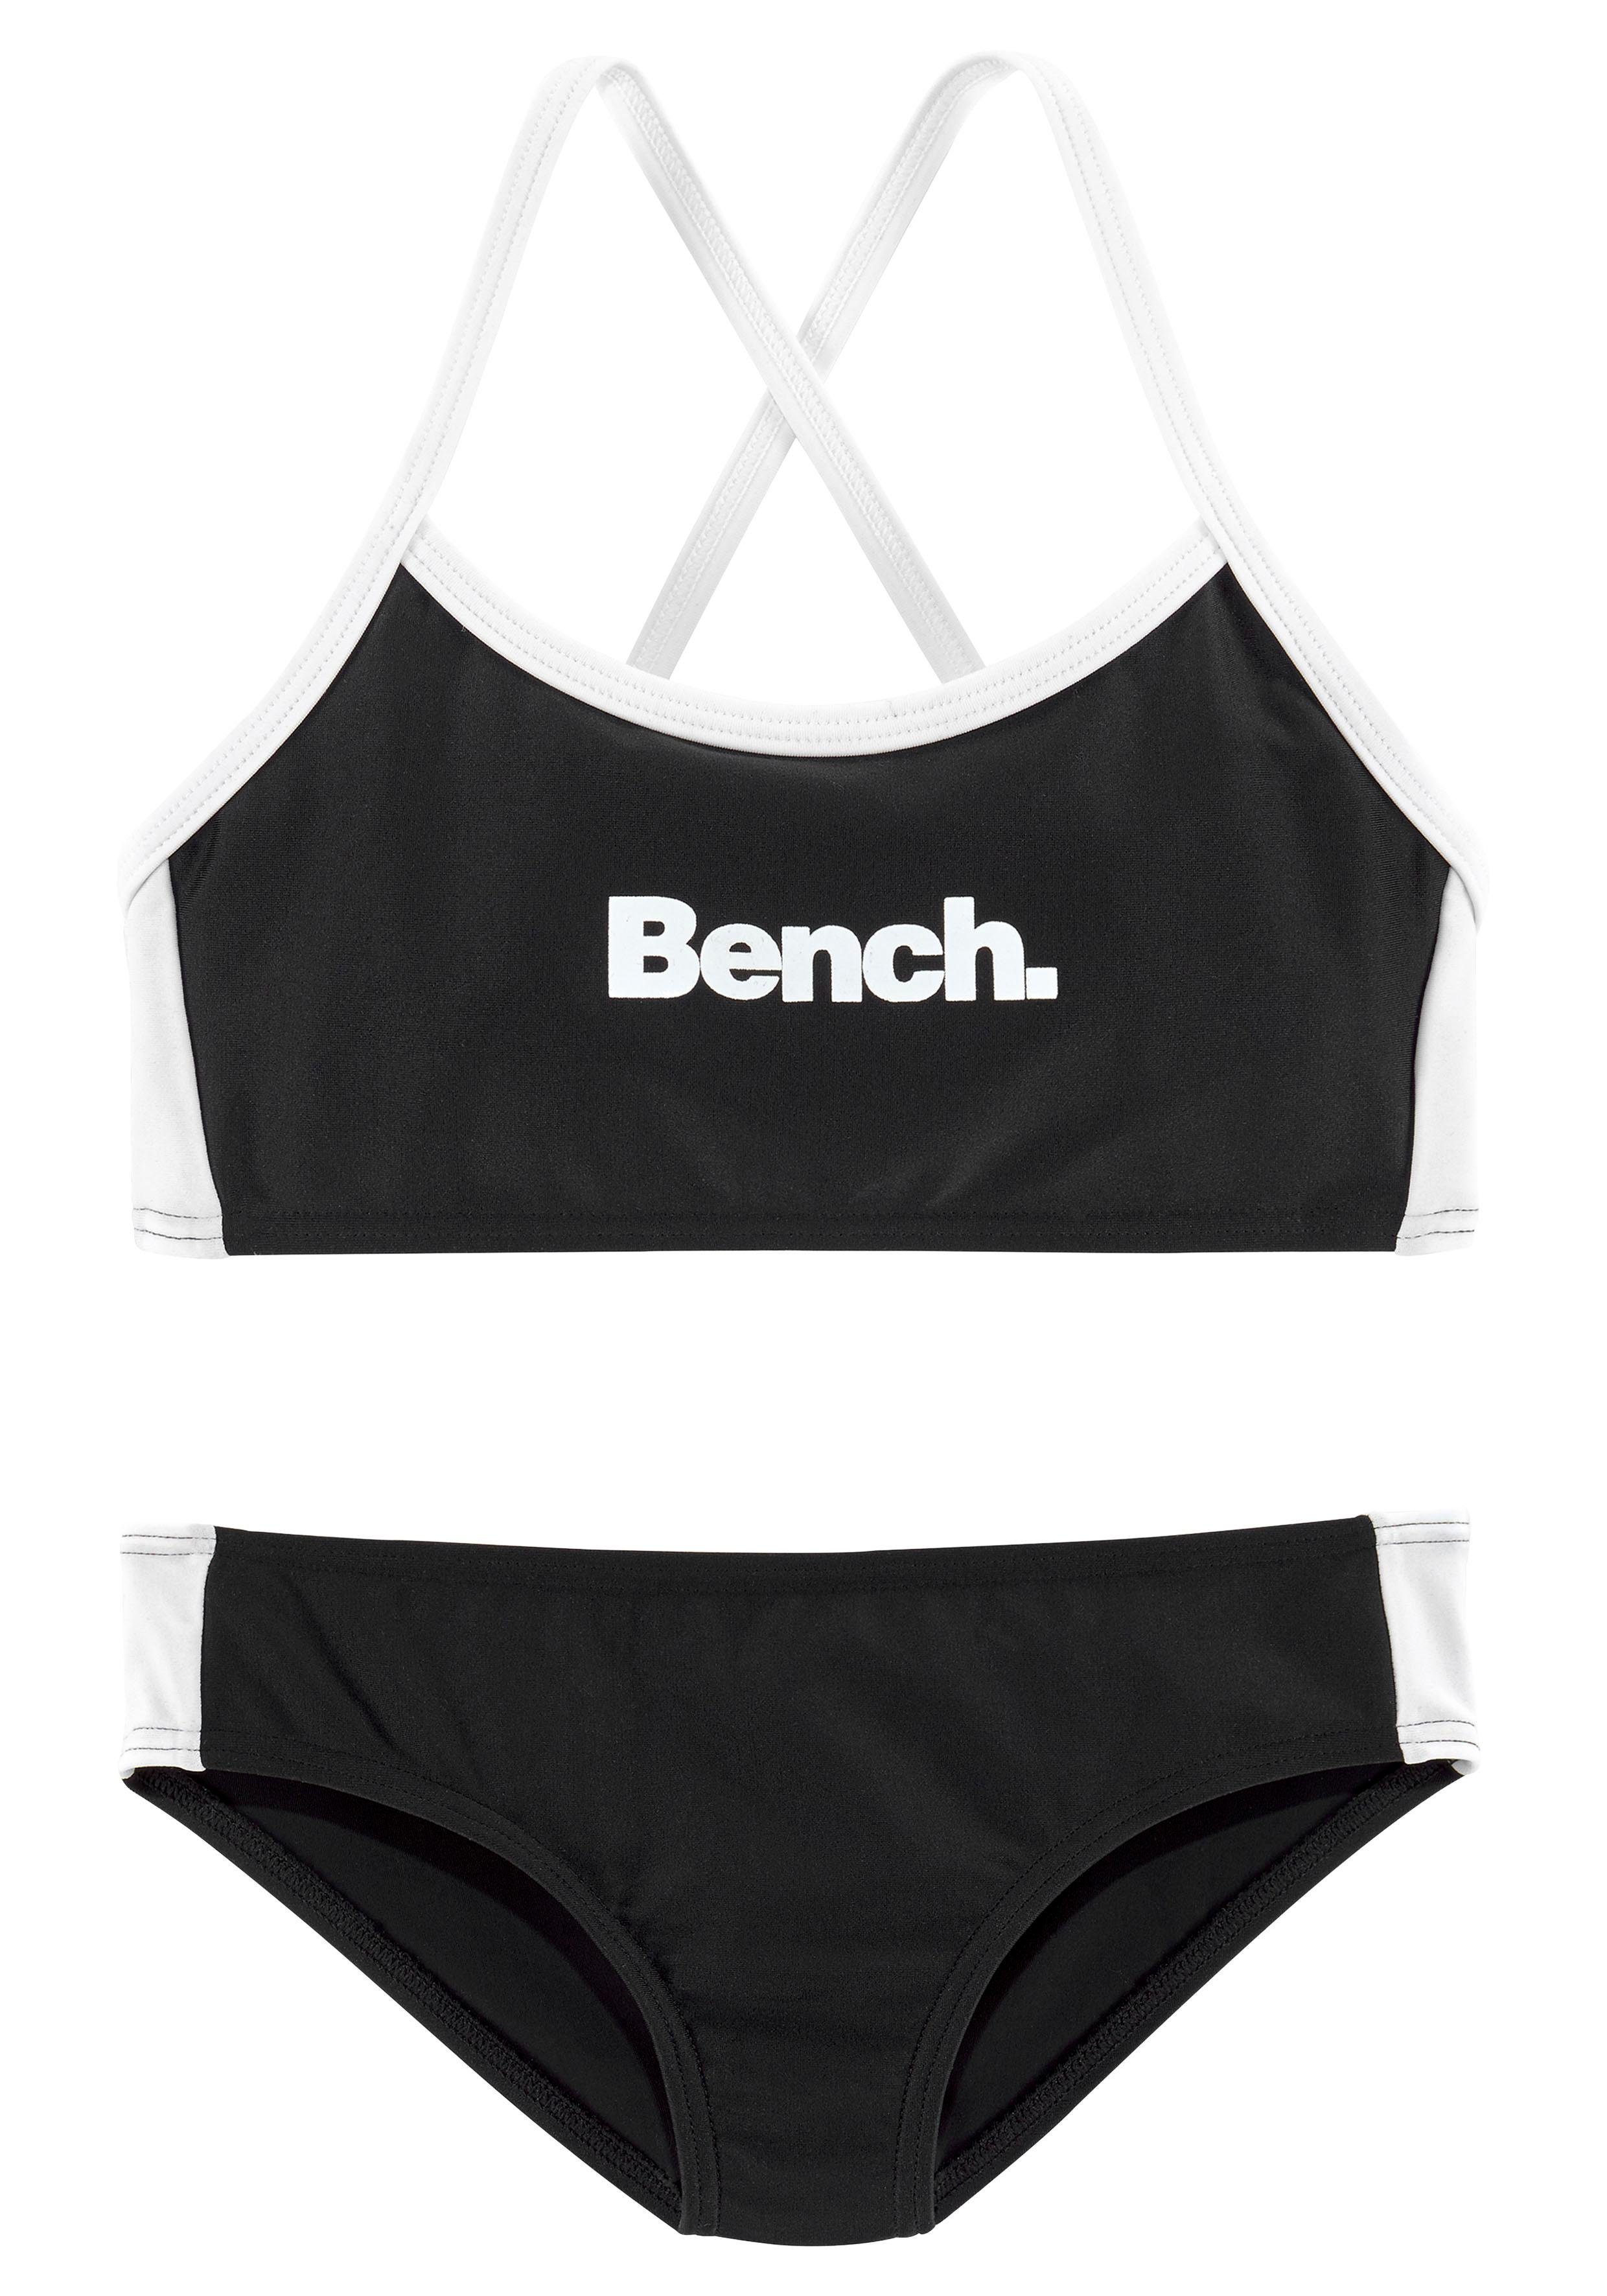 Bench. schwarz-weiß Bustier-Bikini gekreuzten Trägern mit